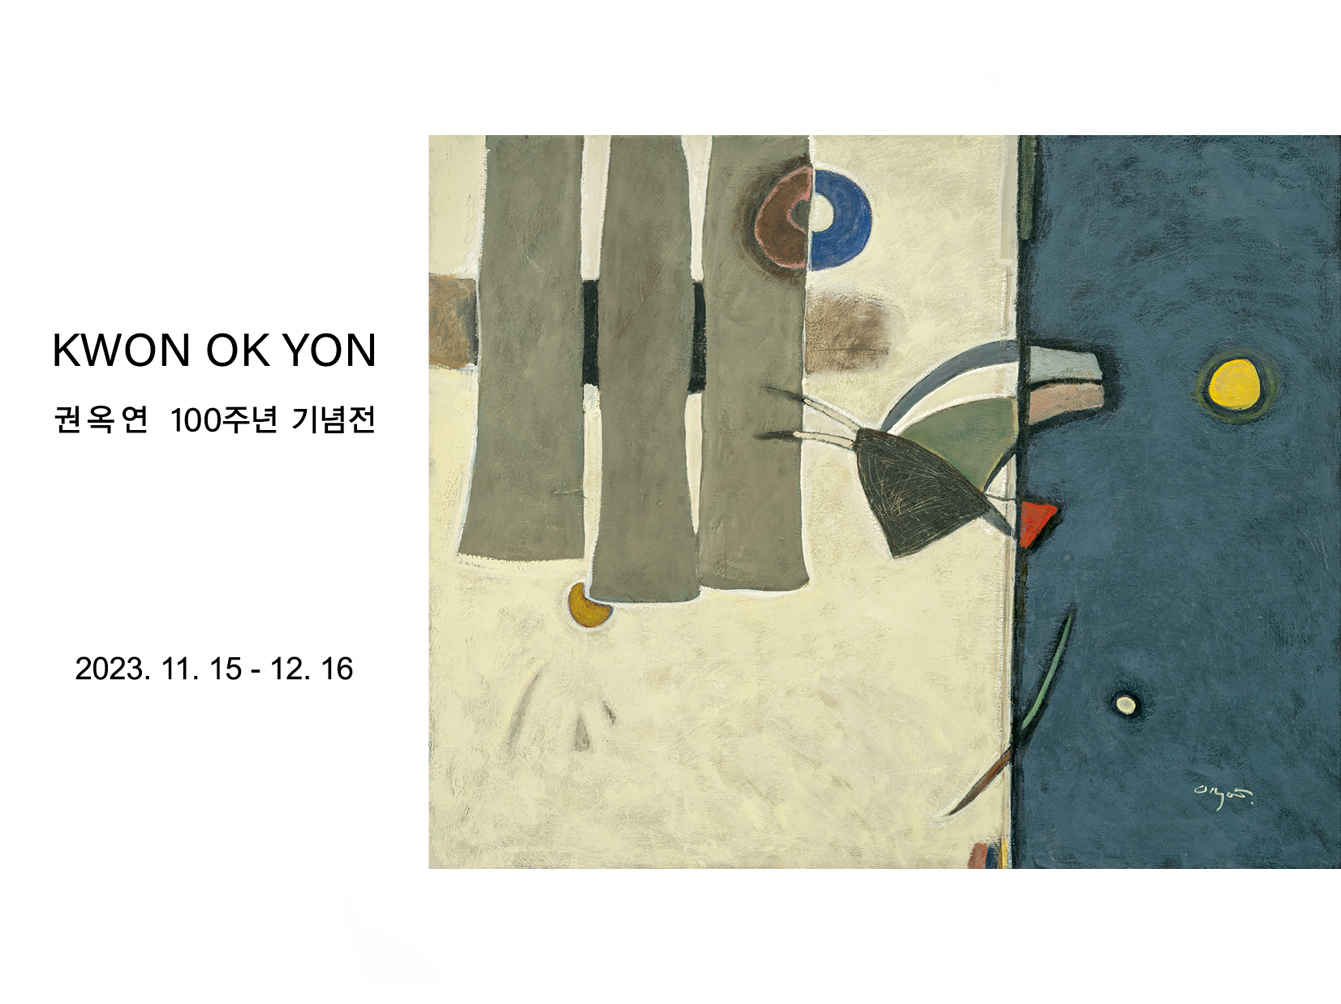 KWON OK YON: Kwon Ok Yon Centennial Exhibition